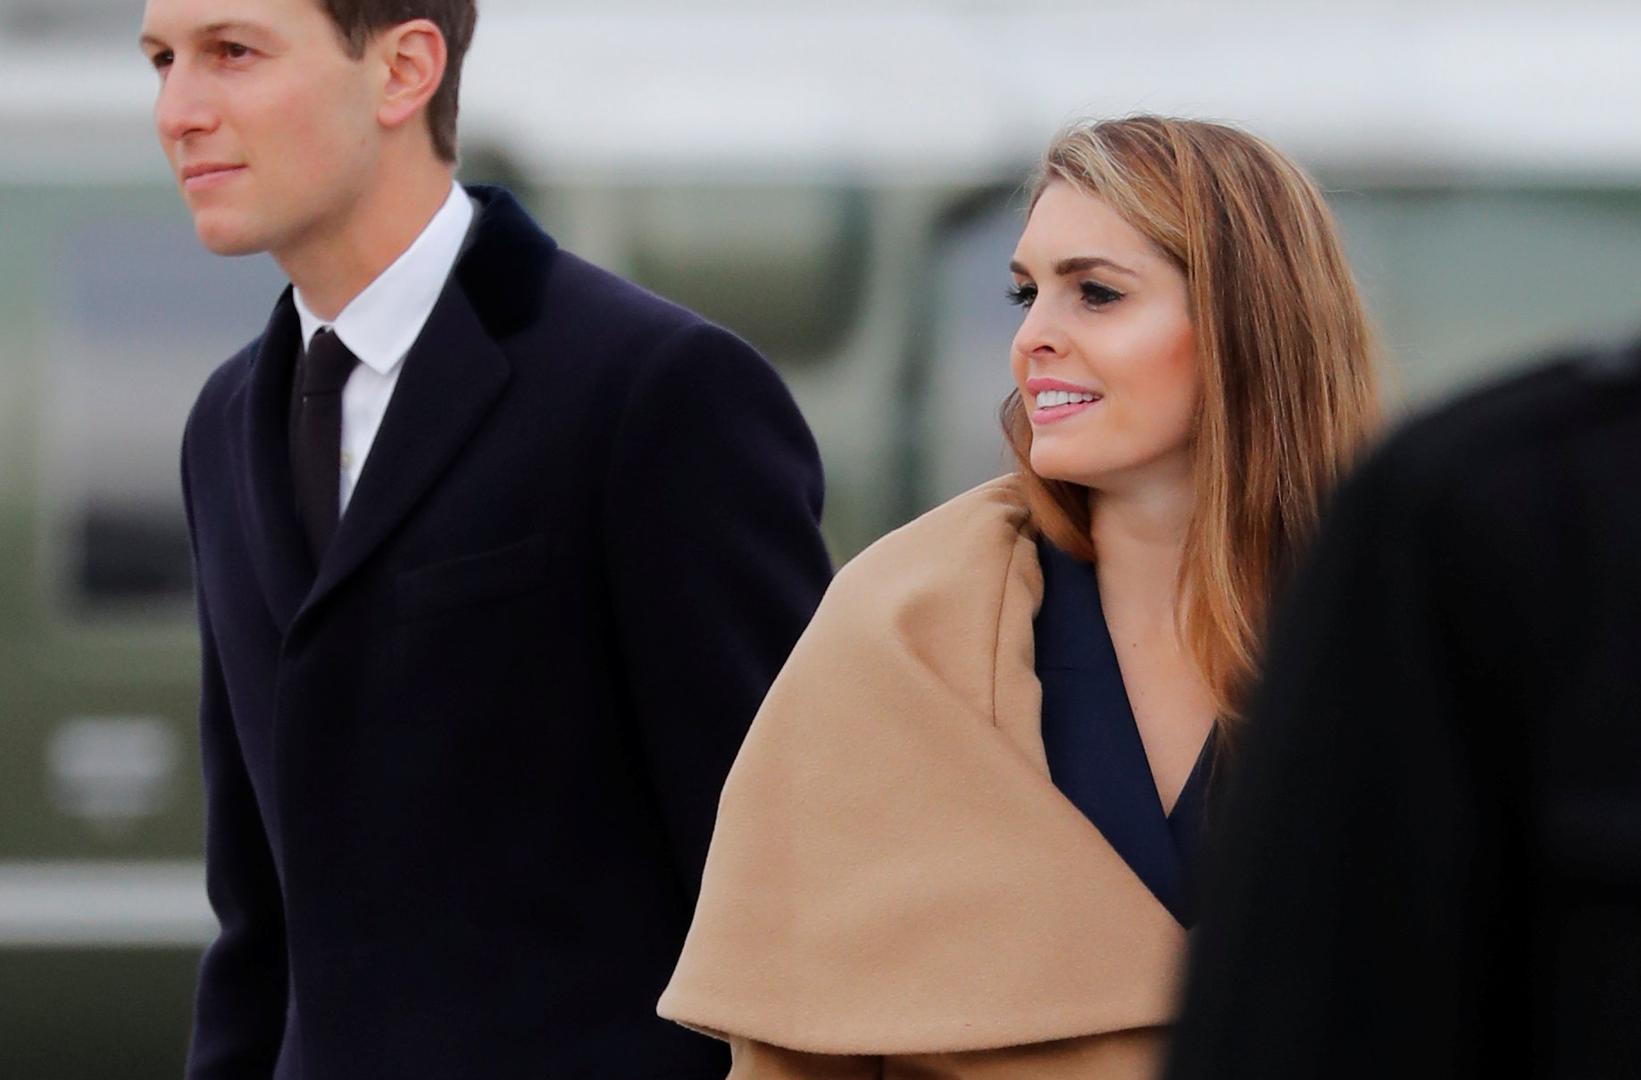 S Trumpom u Davos nisu došli njegova supruga Melania Trump ni kći i savjetnica Ivanka Trump, ali jest Ivankin suprug Jared Kushner, koji je pravio društvo Hope Hicks.